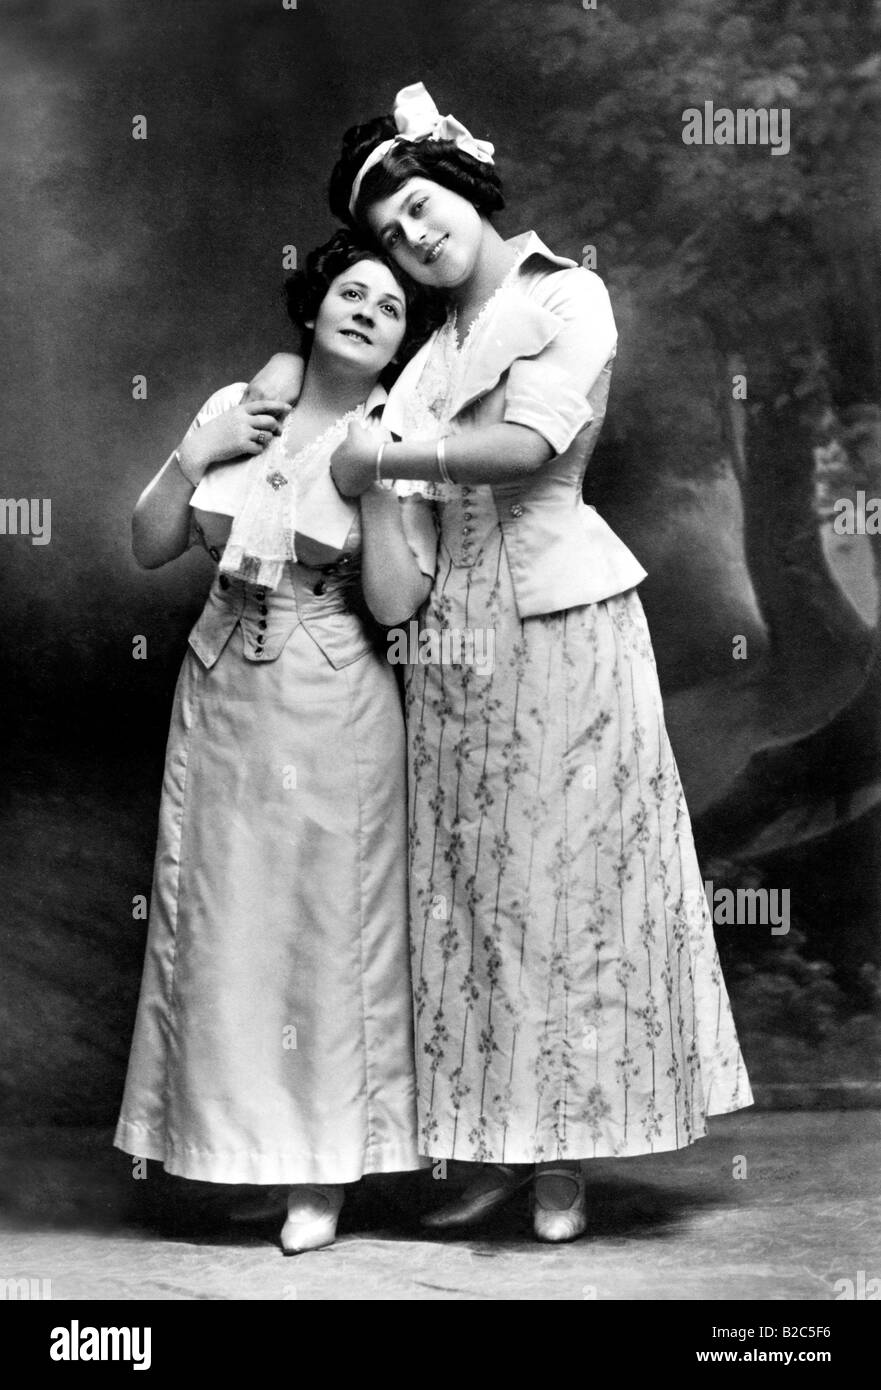 Die keusche Barbara, deux femmes enlacés, photo historique d'environ 1910 Banque D'Images